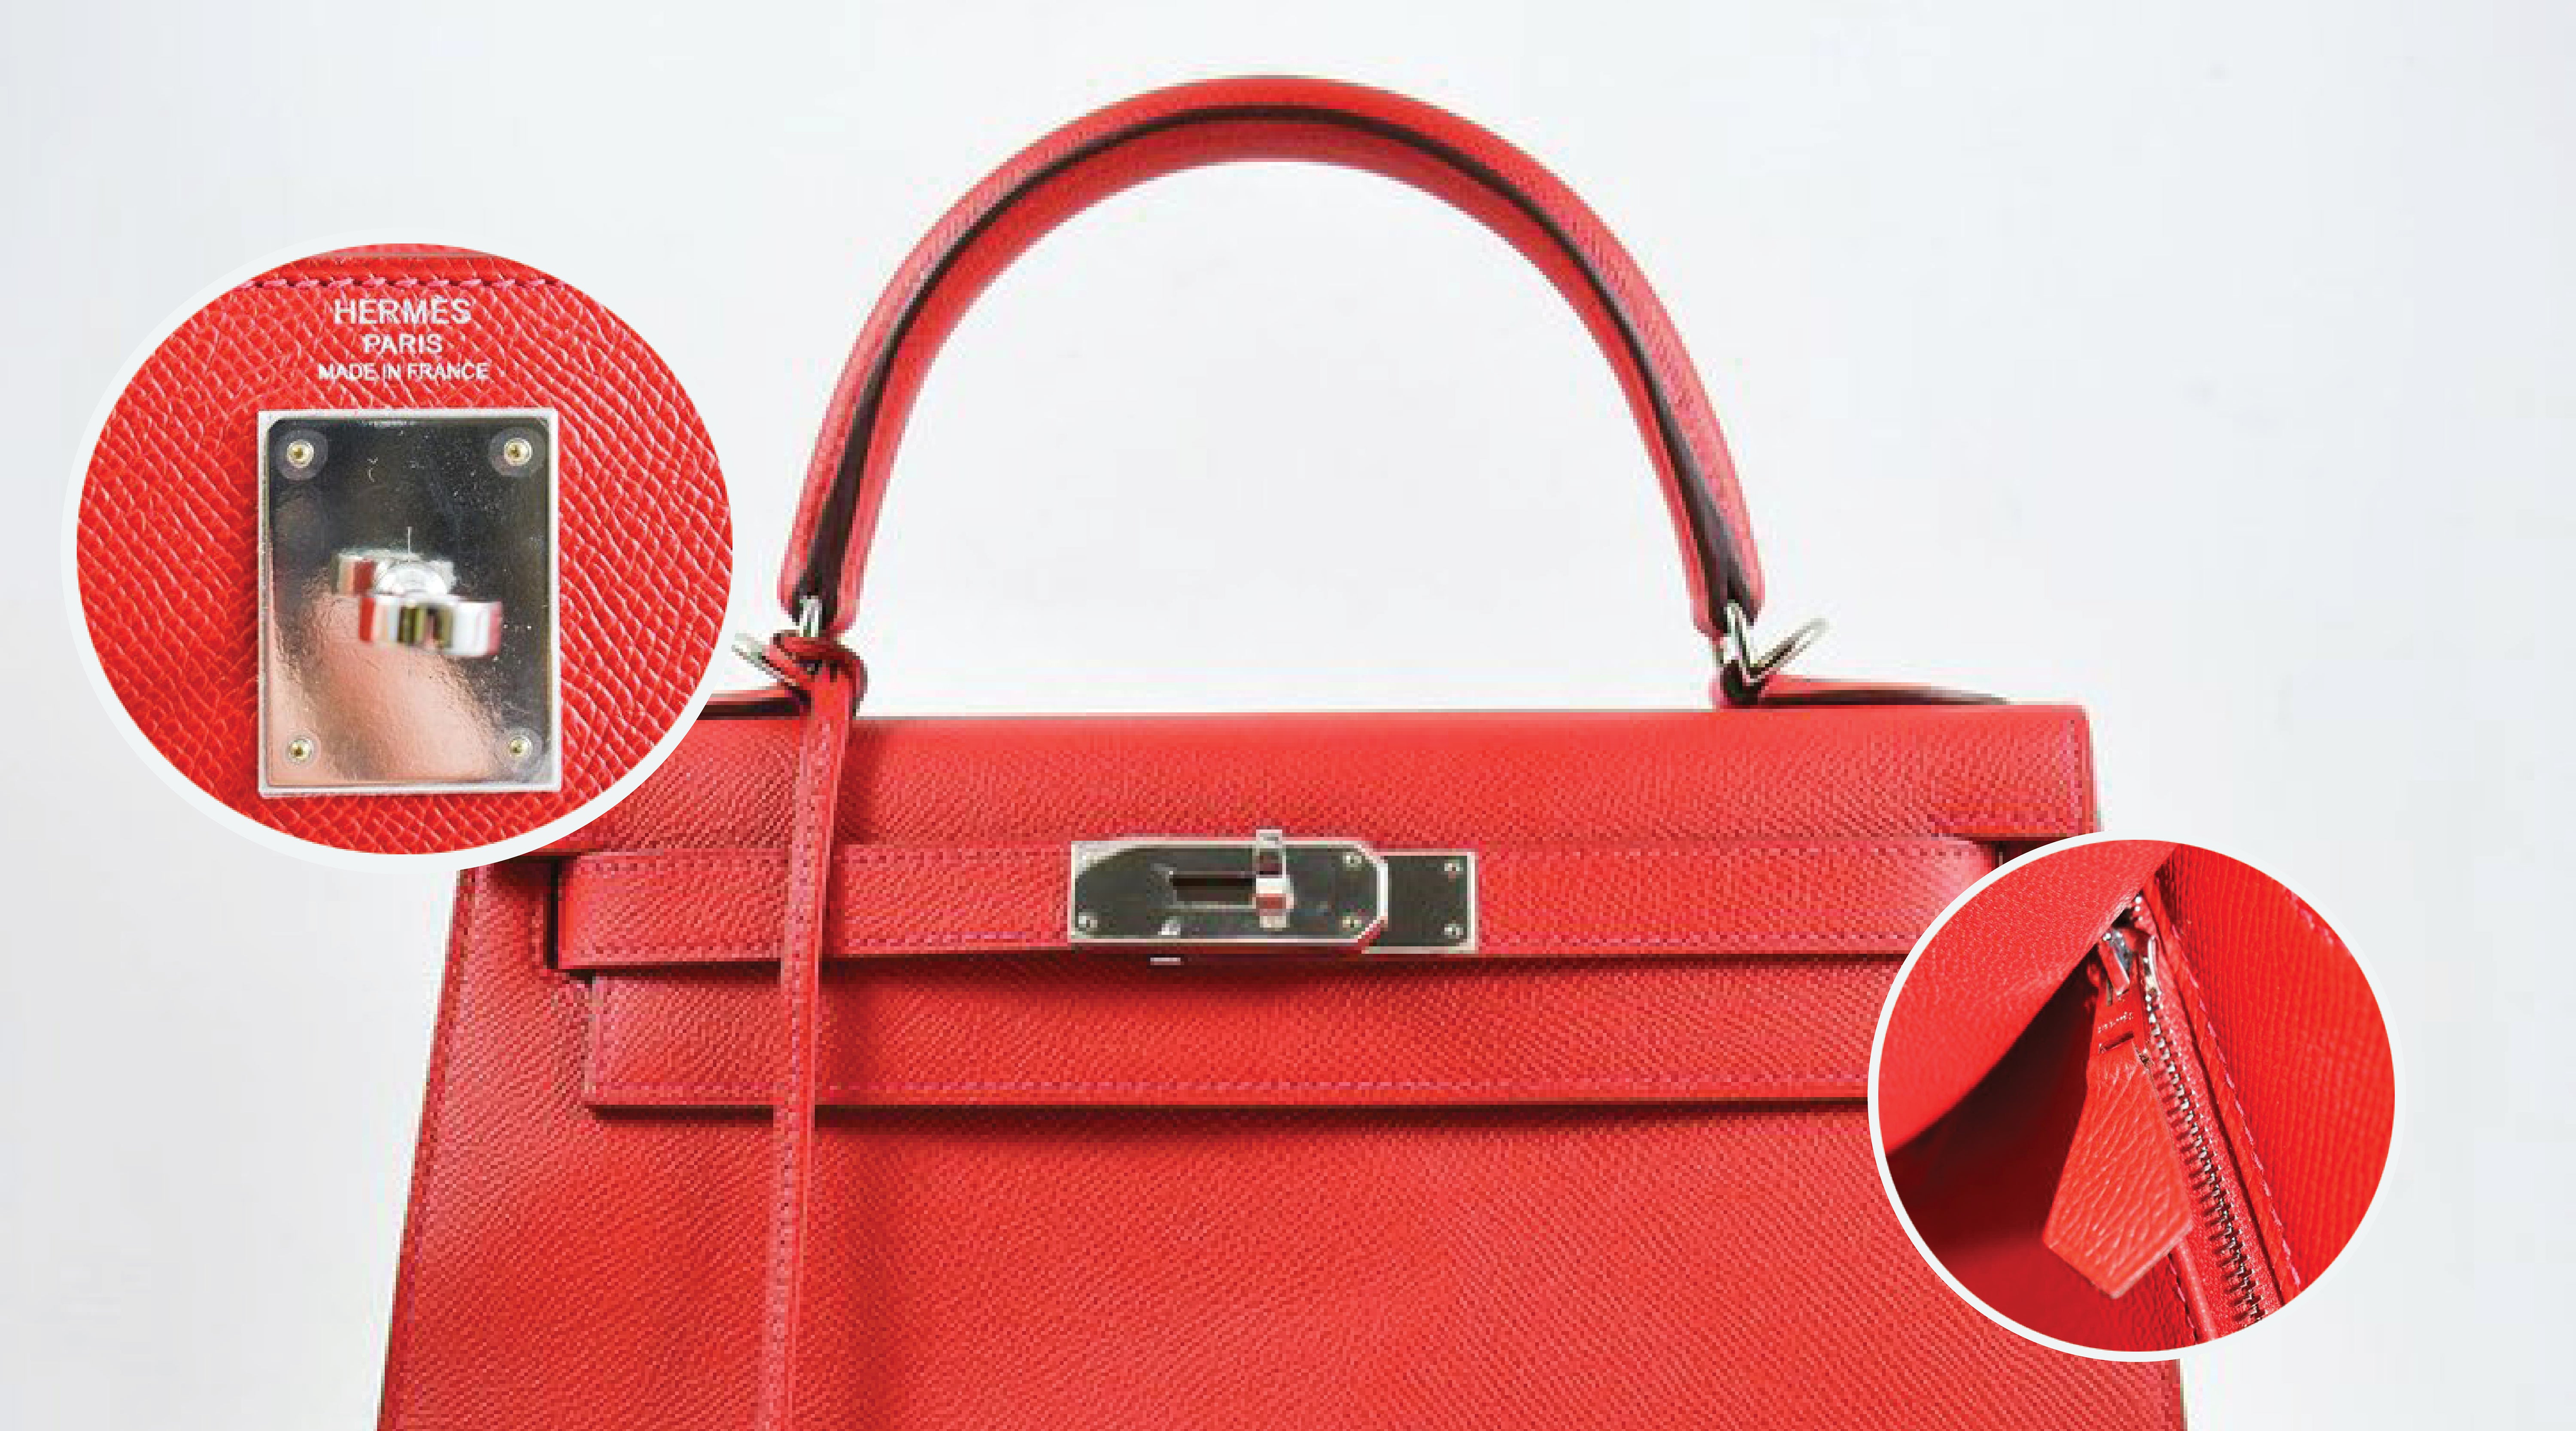 How to Authenticate a Hermès Bag